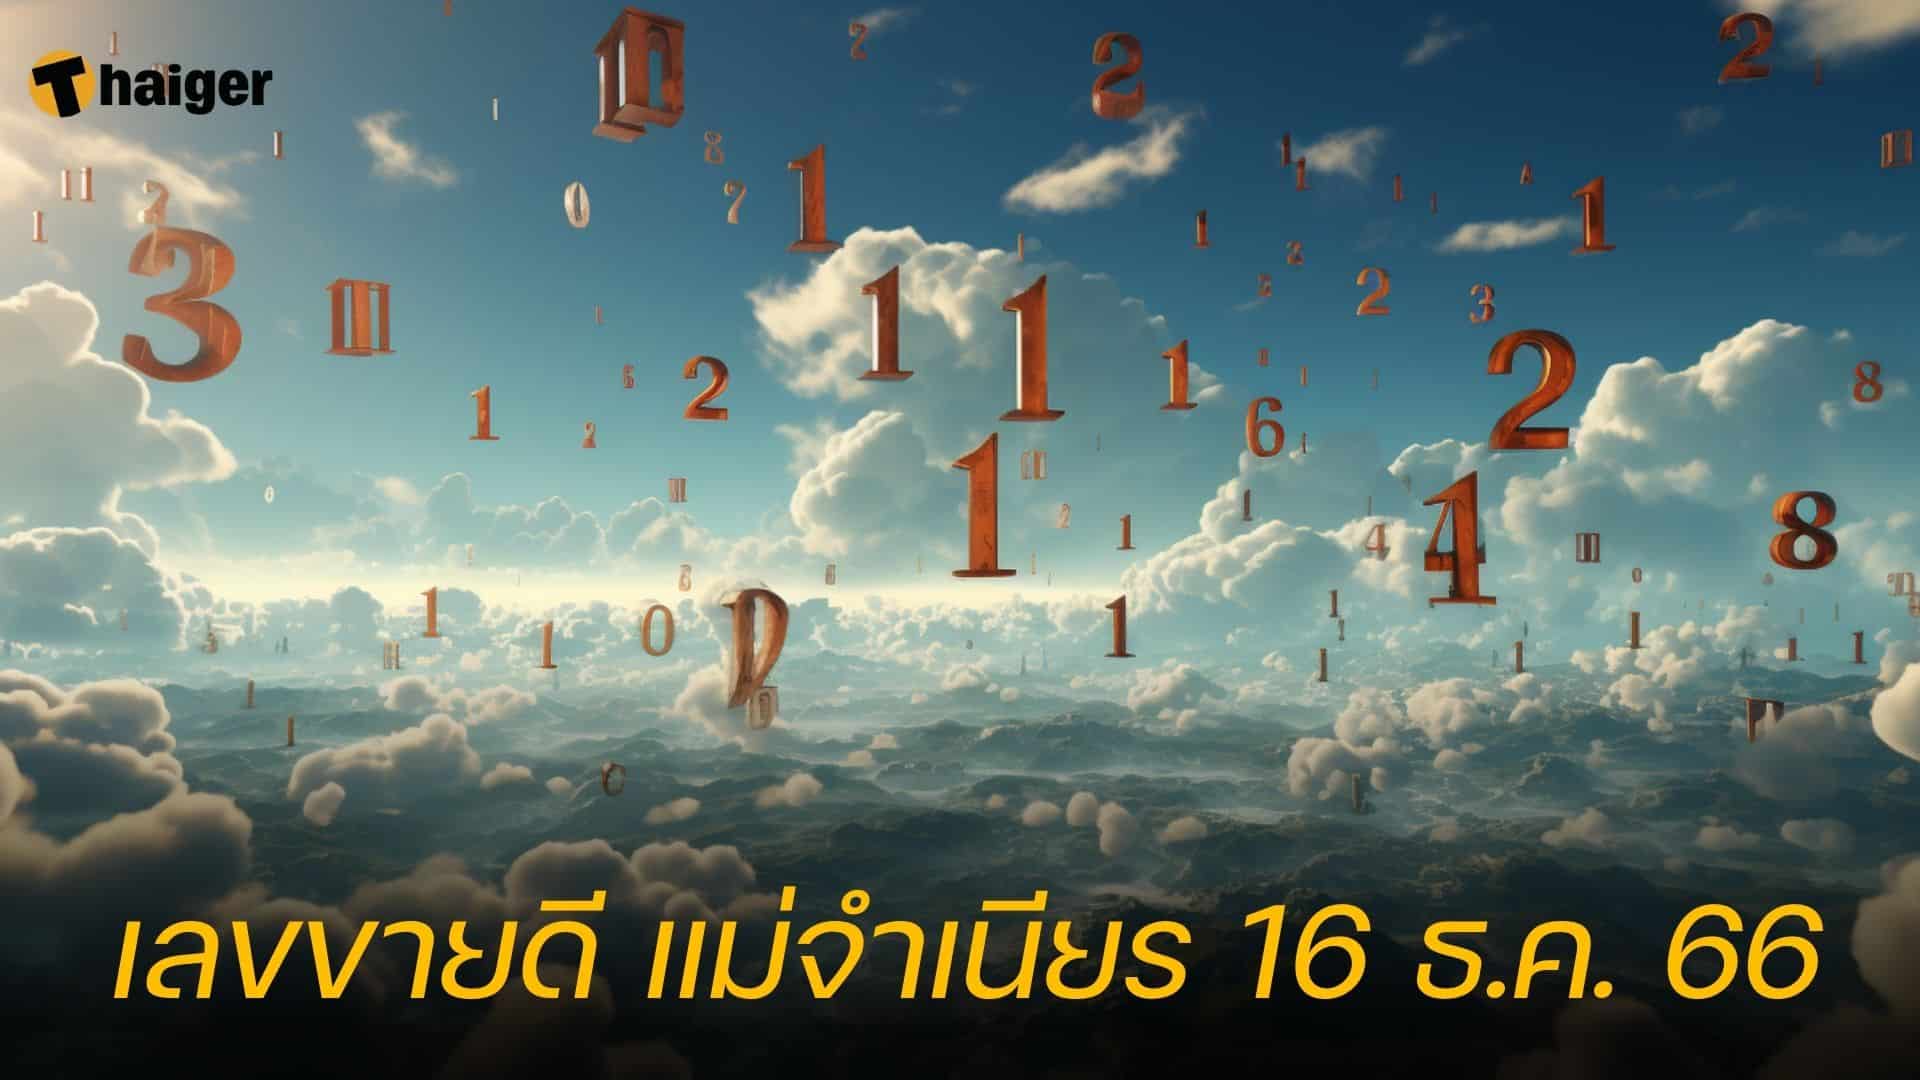 หวยแม่จำเนียร 10 เลขเด็ดขายดี หวยงวด 16 ธ.ค. 66 | Thaiger ข่าวไทย